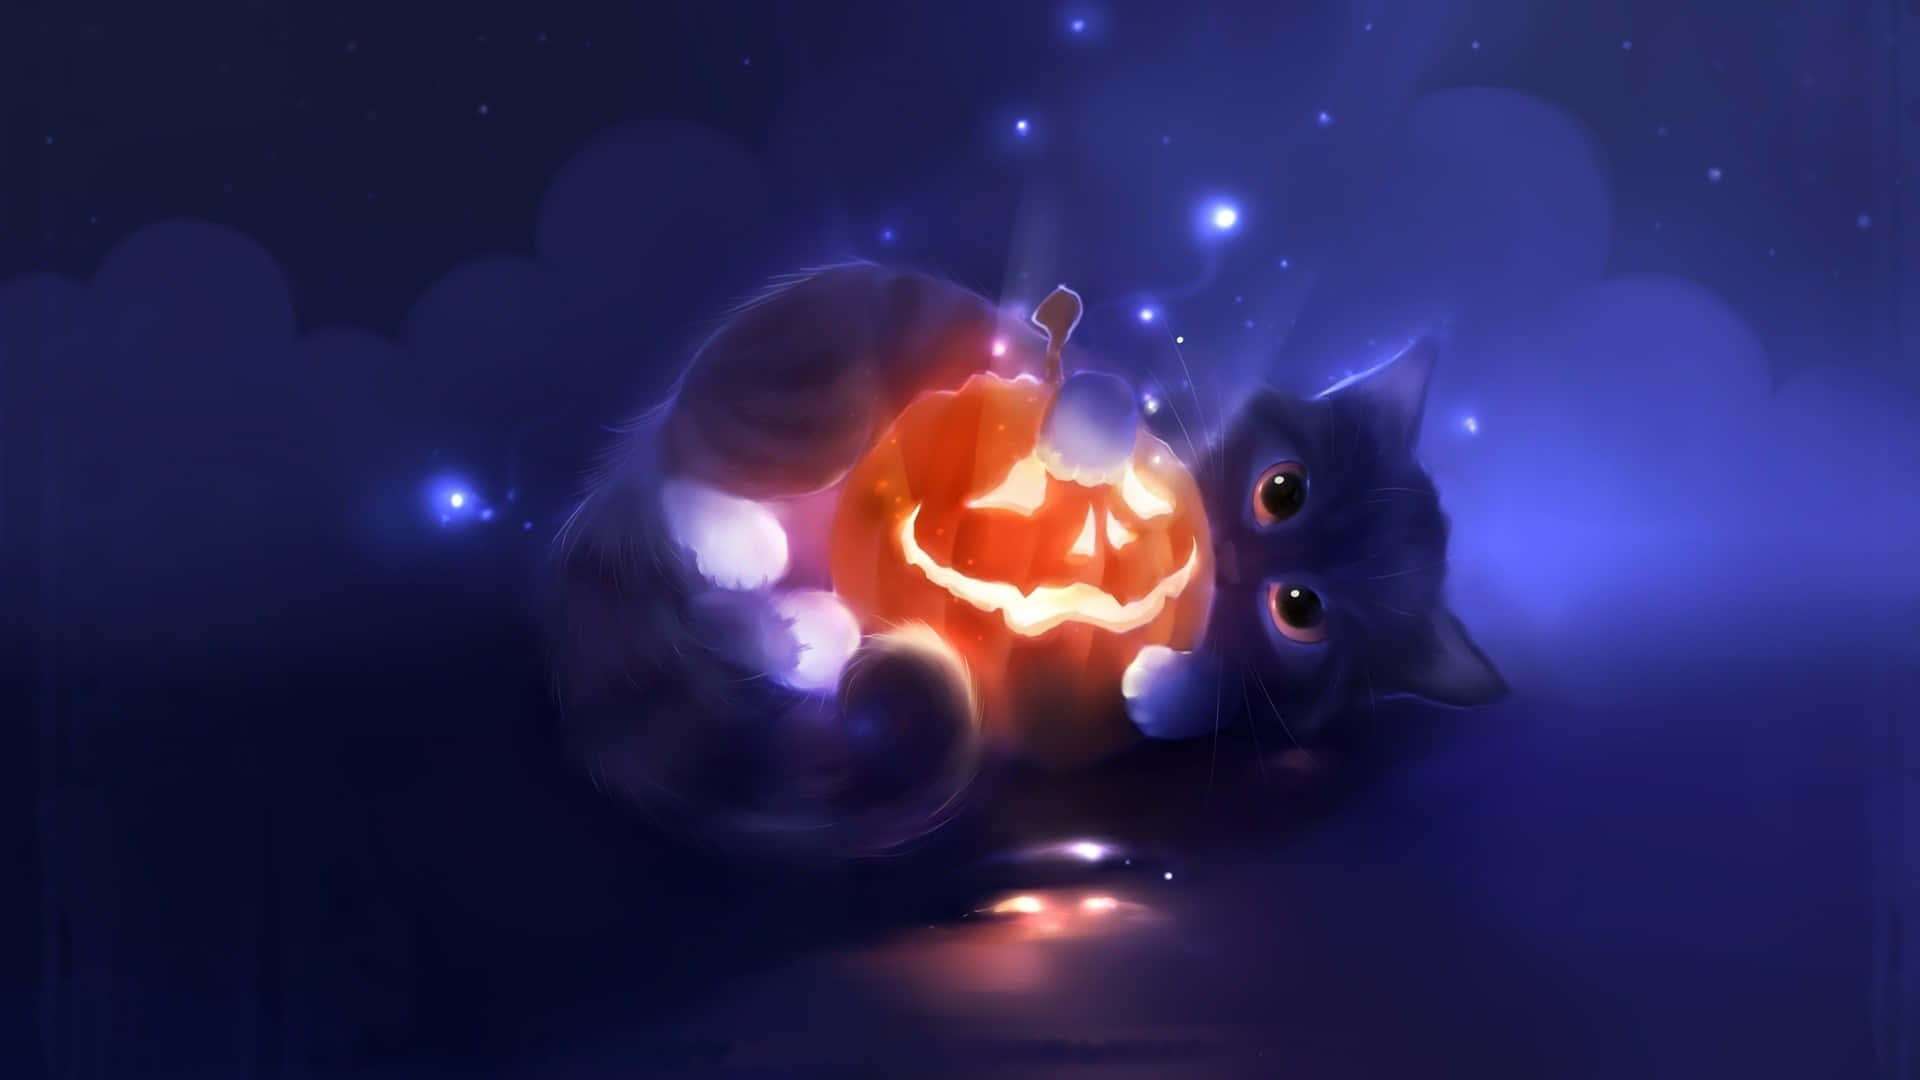 Kattsom Håller I Vacker Halloween-pumpa. Wallpaper